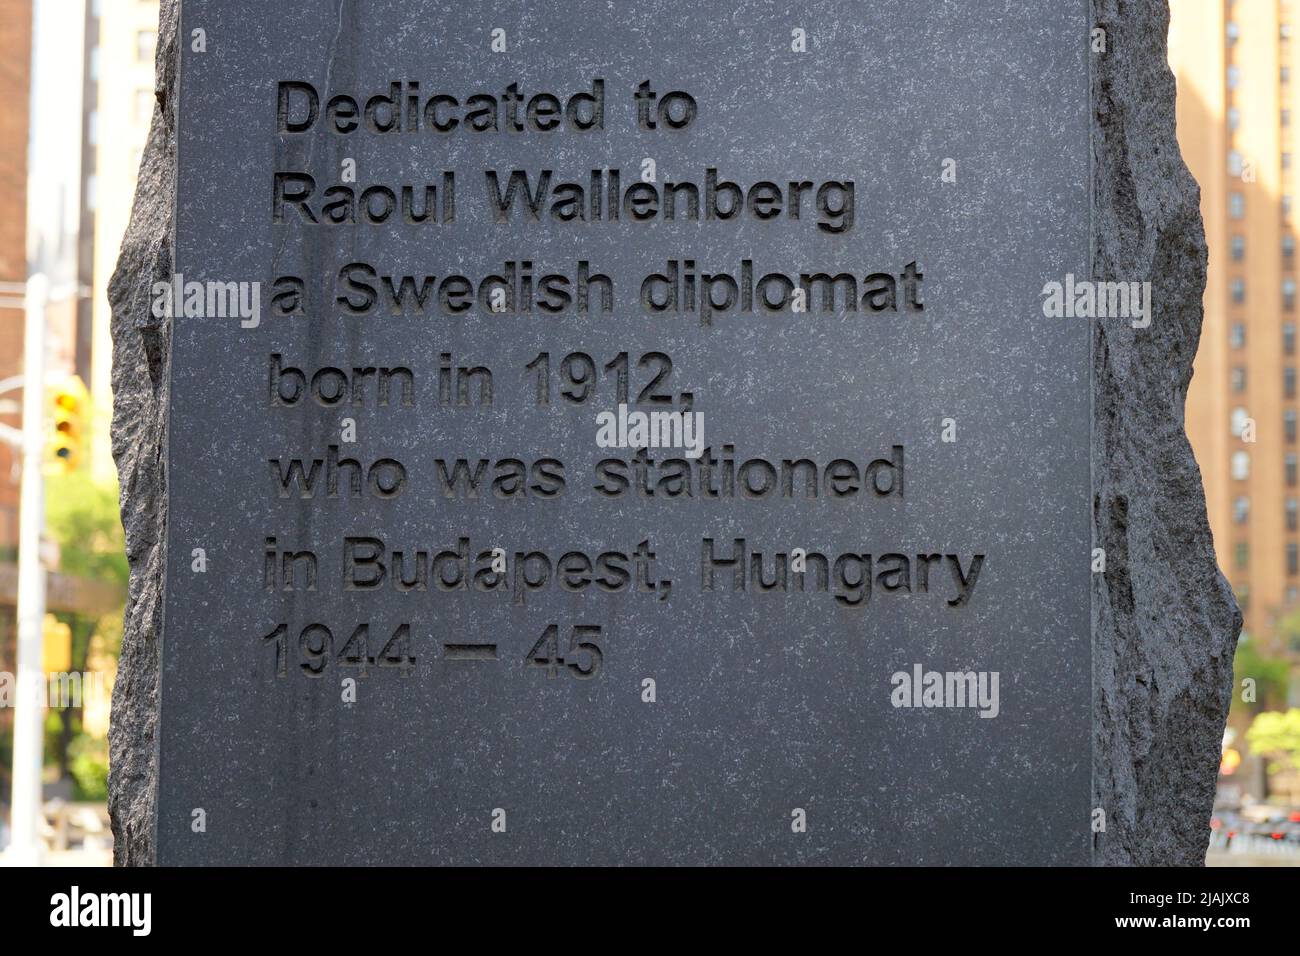 Raoul Wallenberg Monument, presso la sede delle Nazioni Unite, dettaglio, iscrizione di dedica scolpita in pietra, New York, NY, USA Foto Stock